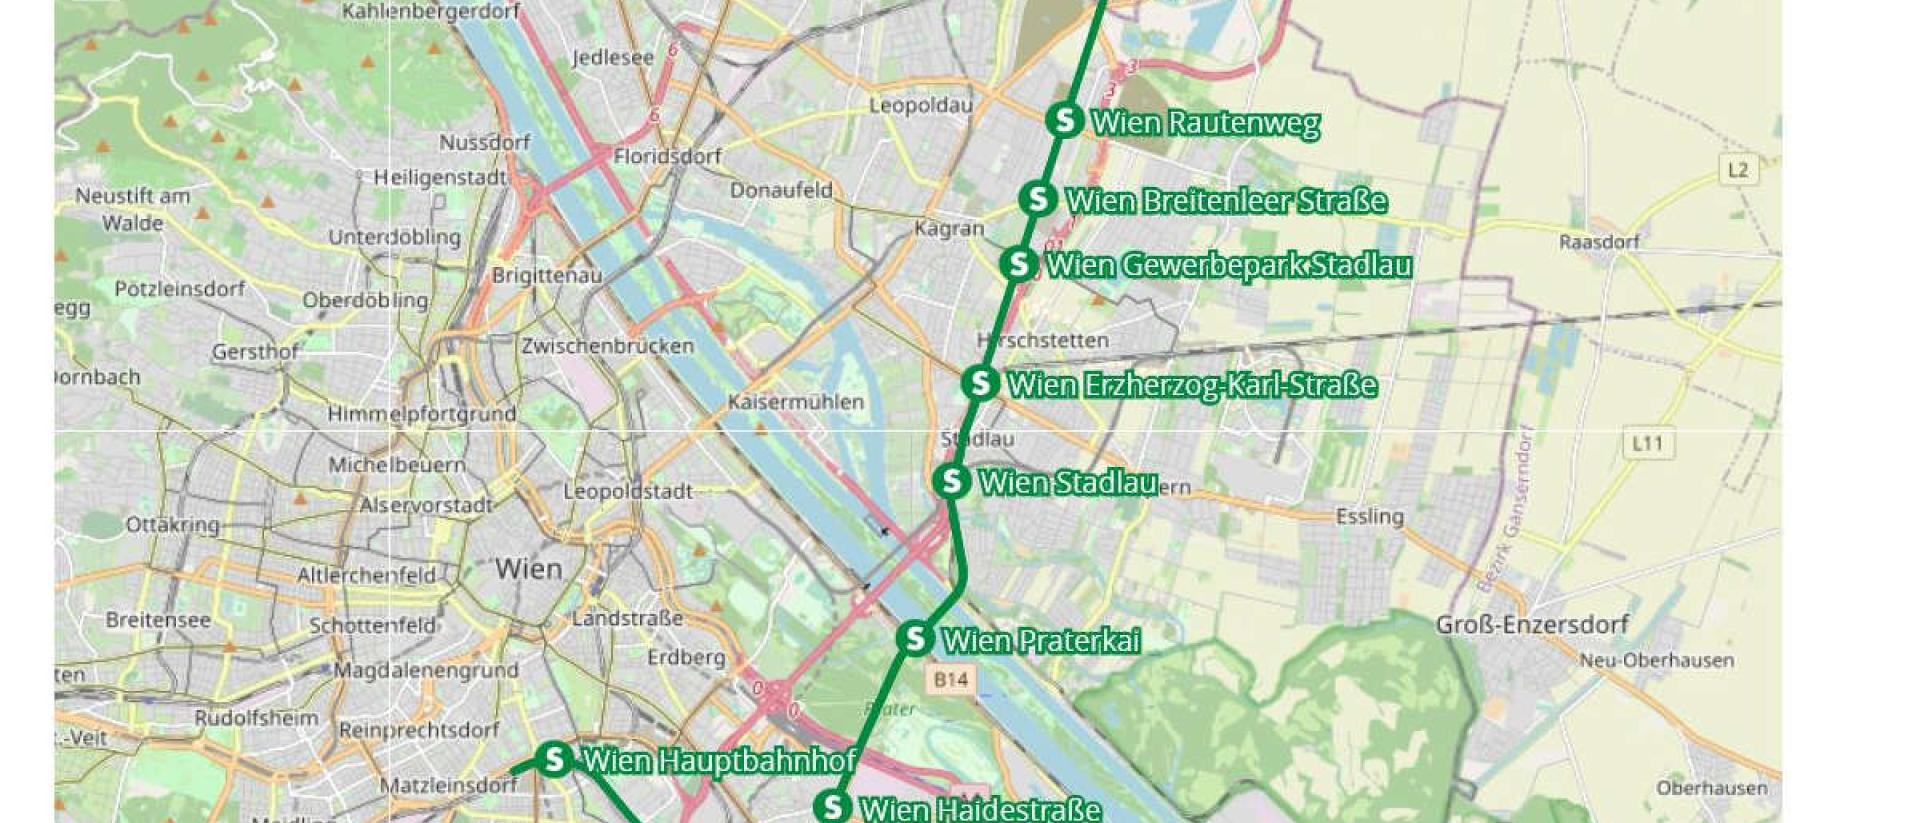 Vorschlag für eine neue S-Bahnlinie auf bestehenden, teilweise ungenutzeten Gleisanlagen durch die Donaustadt